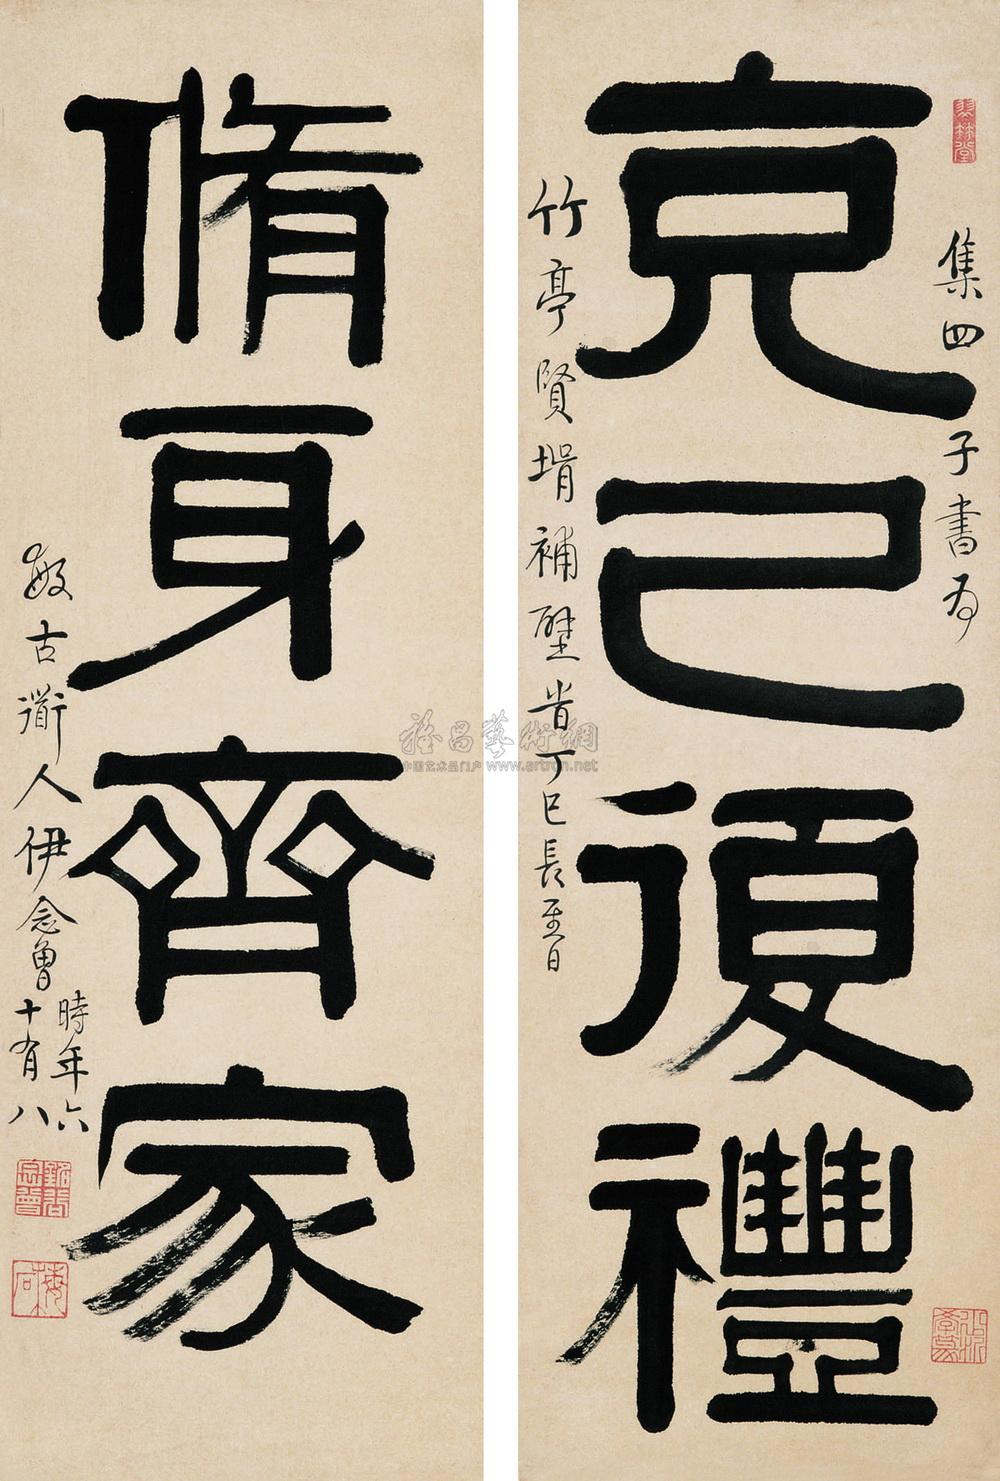 0080 丁巳(1857年)作 隶书四言联 字对 水墨纸本